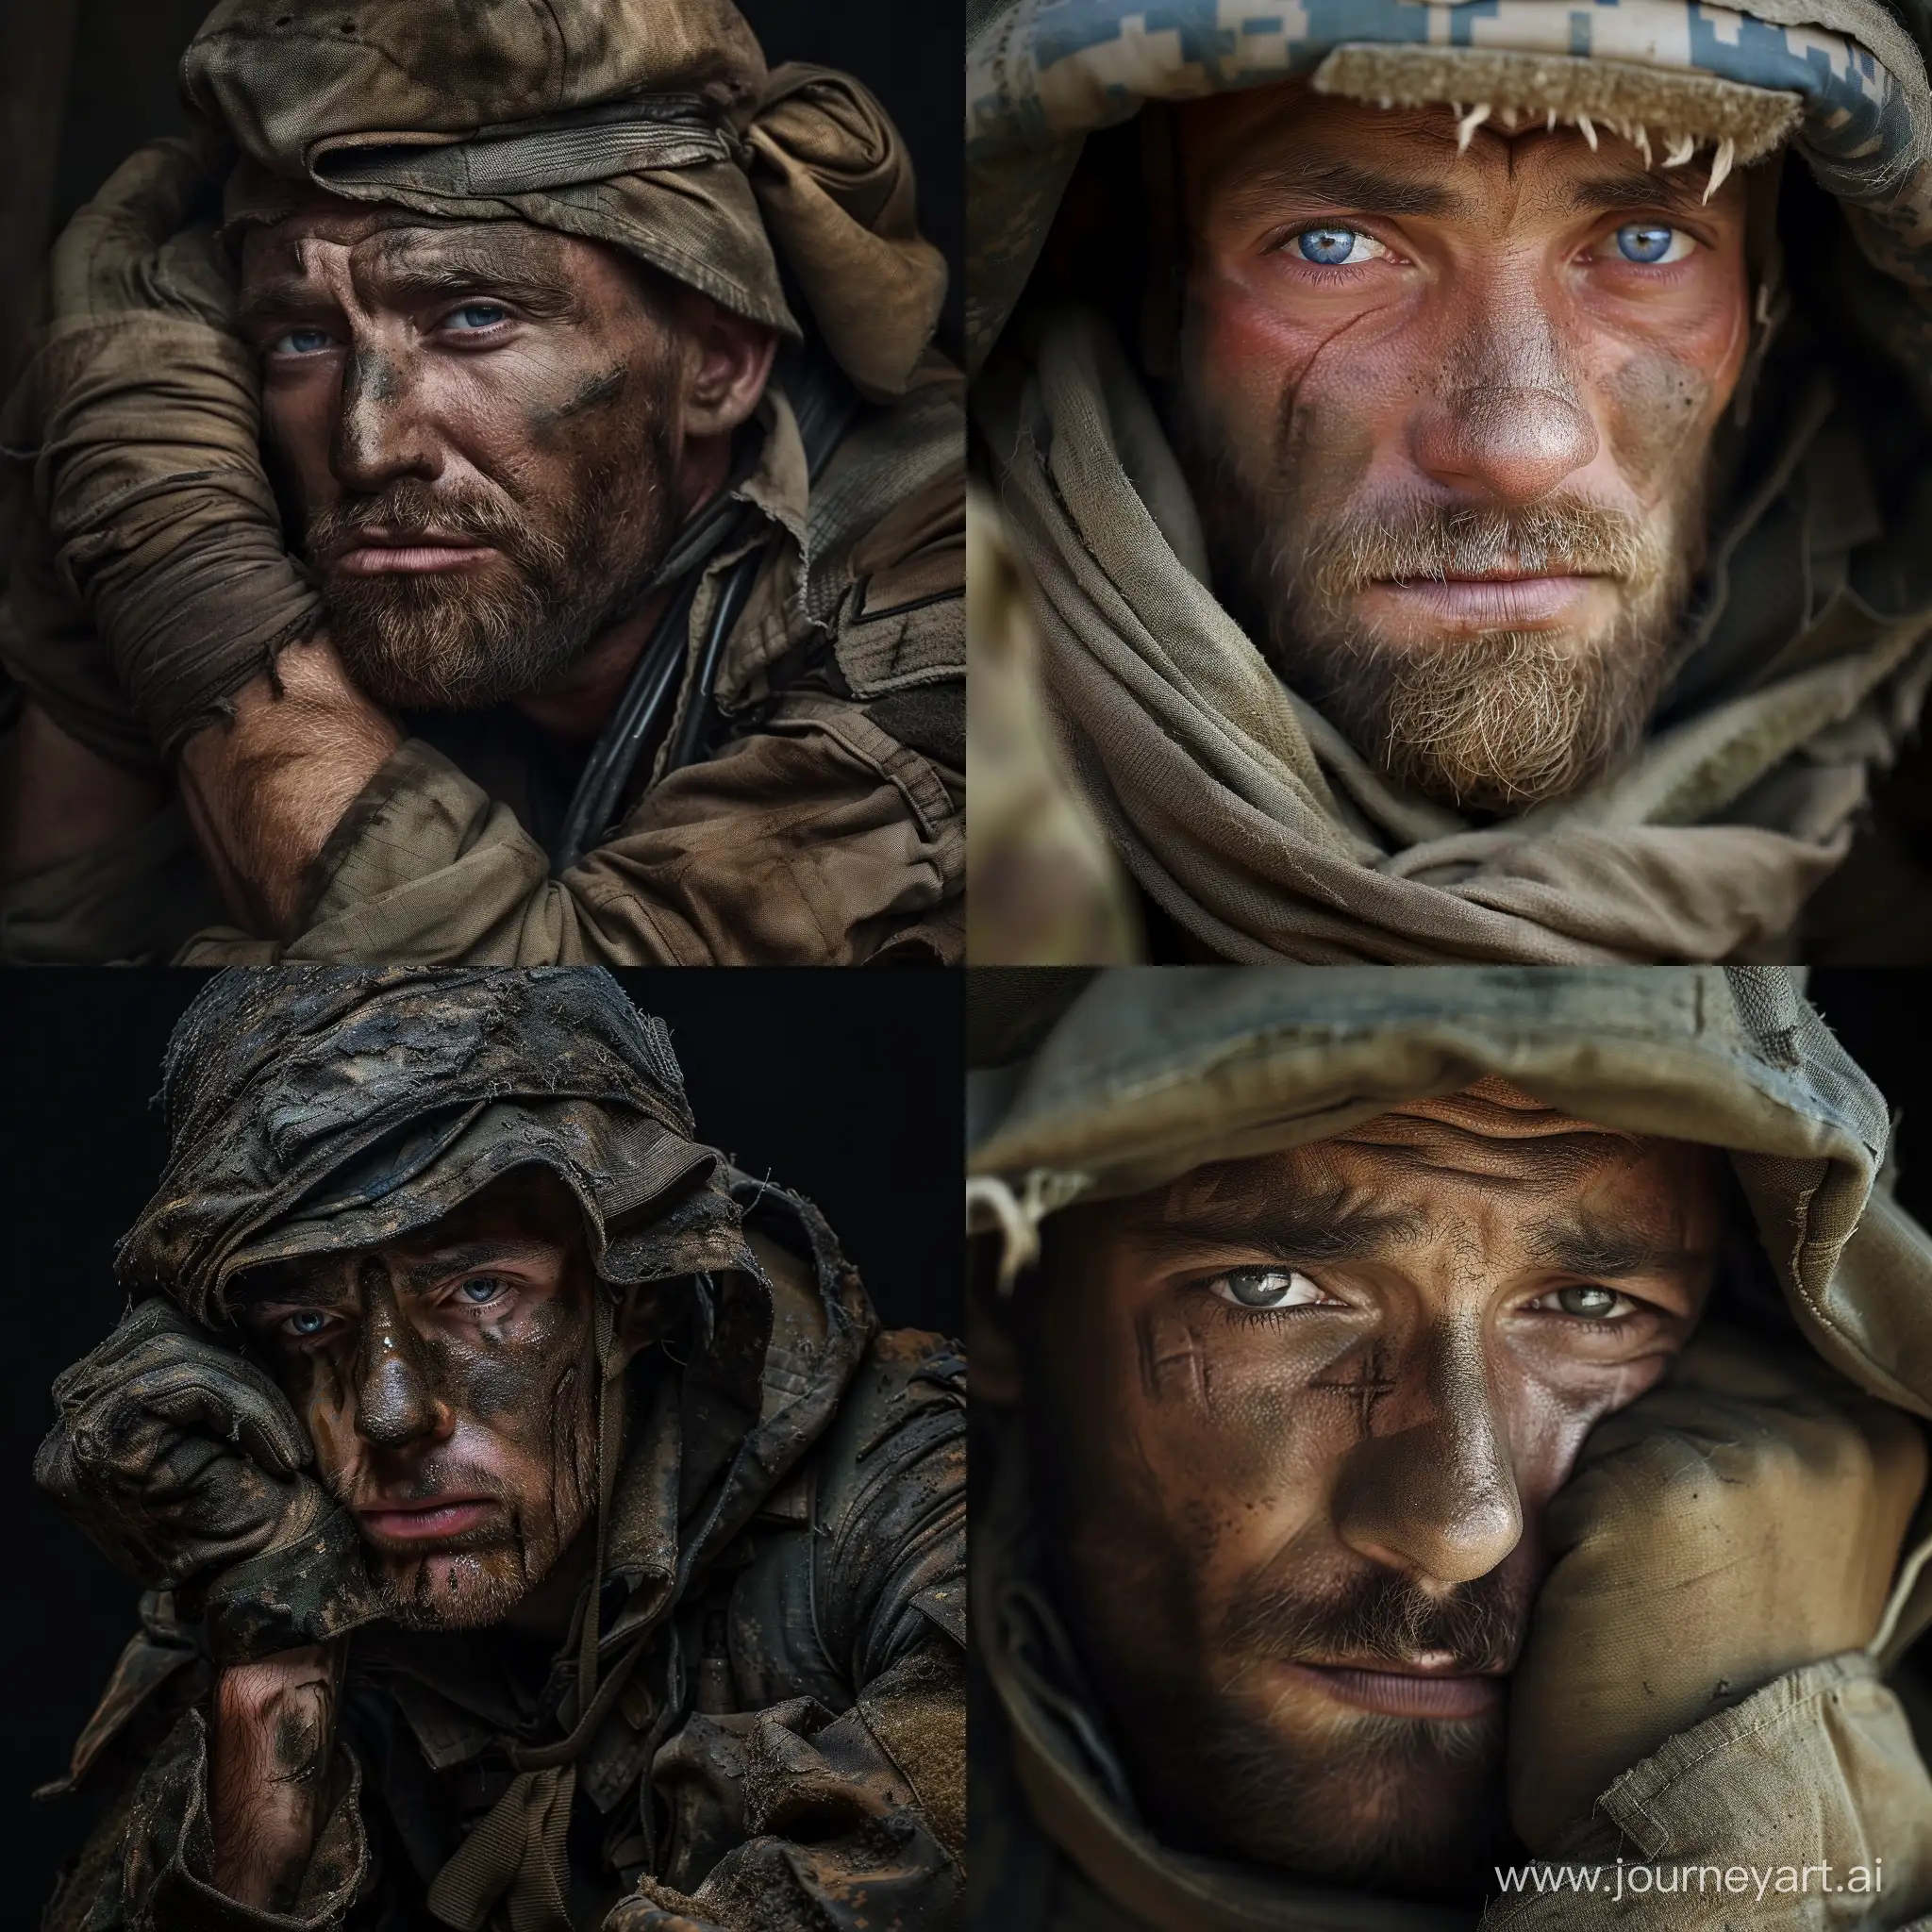 A war-weary soldier